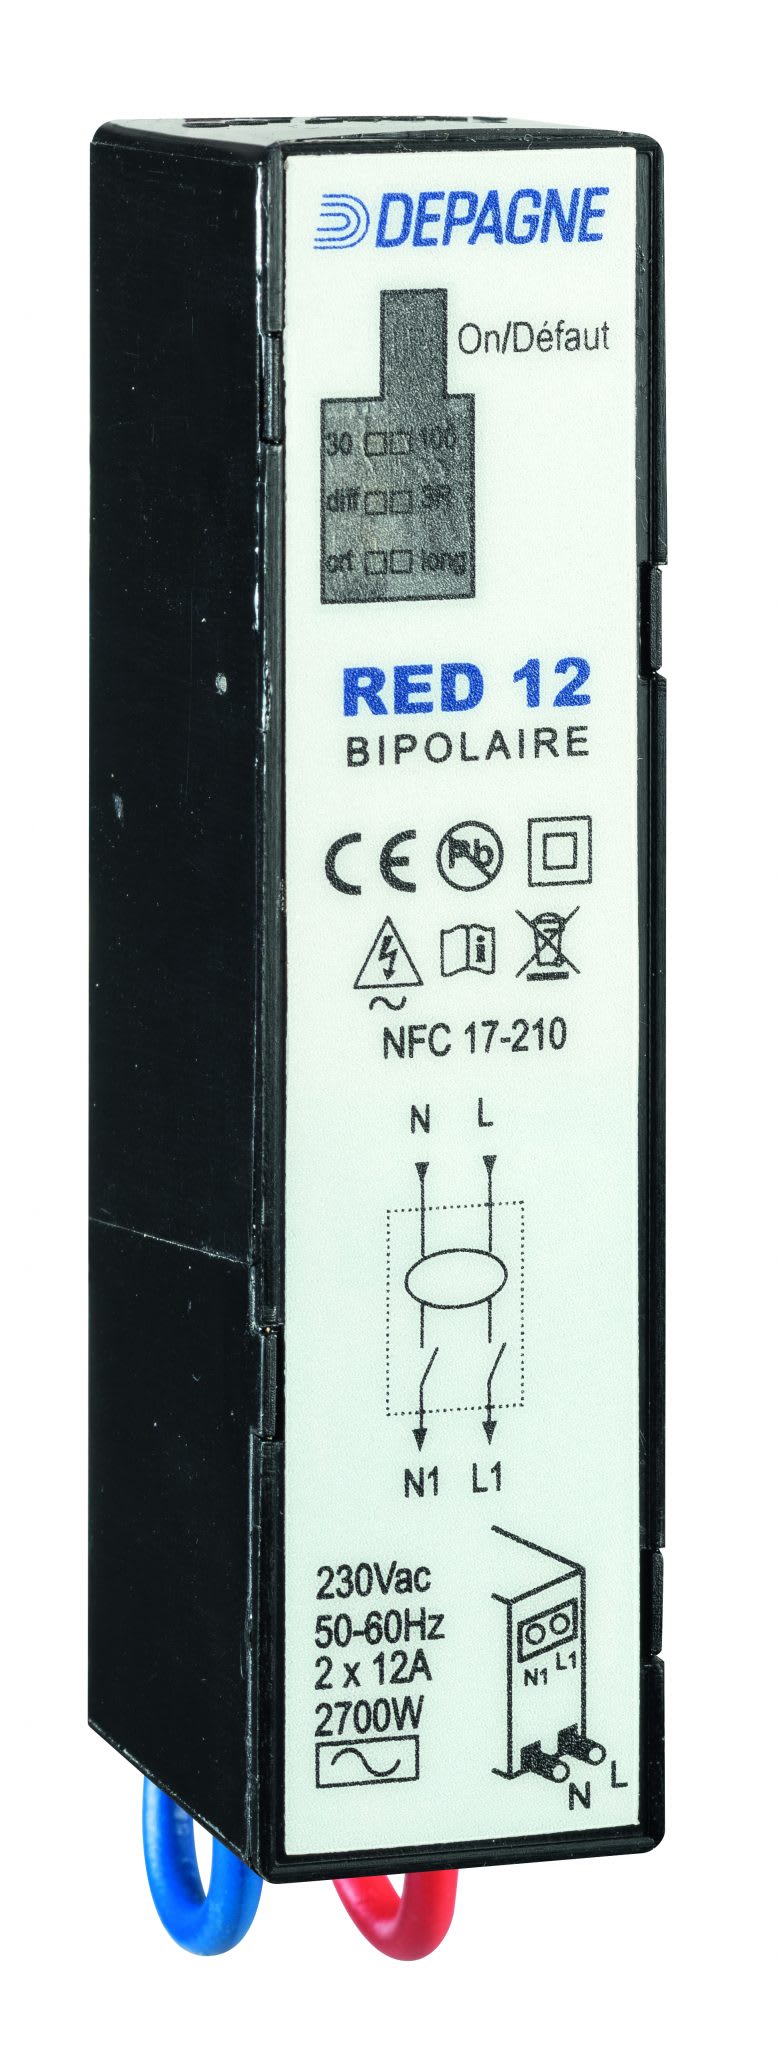 Depagne - Dispositif de déconnexion automatique avec réenclenchement automatique - RED 12